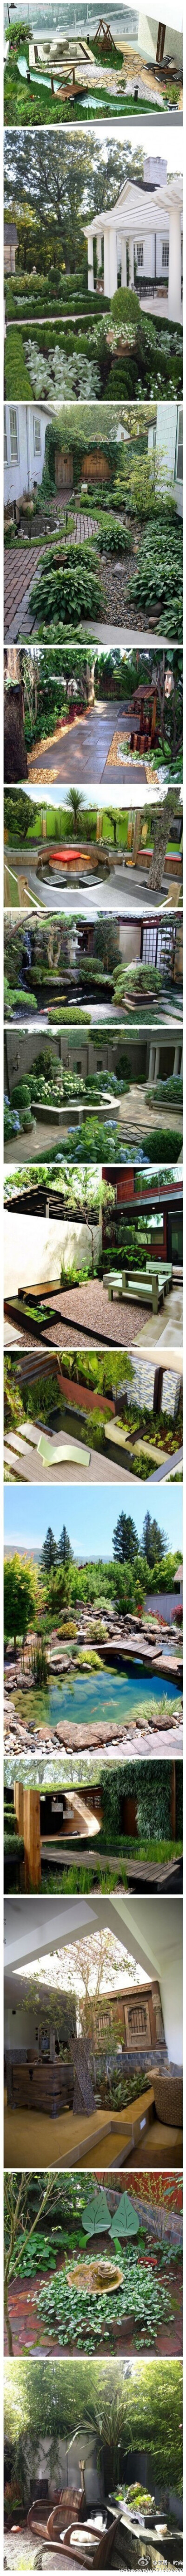 超漂亮庭院设计，绿色的小迷宫、鹅卵石小径、小池塘、喷泉、茂盛的盆栽和缤纷的鲜花